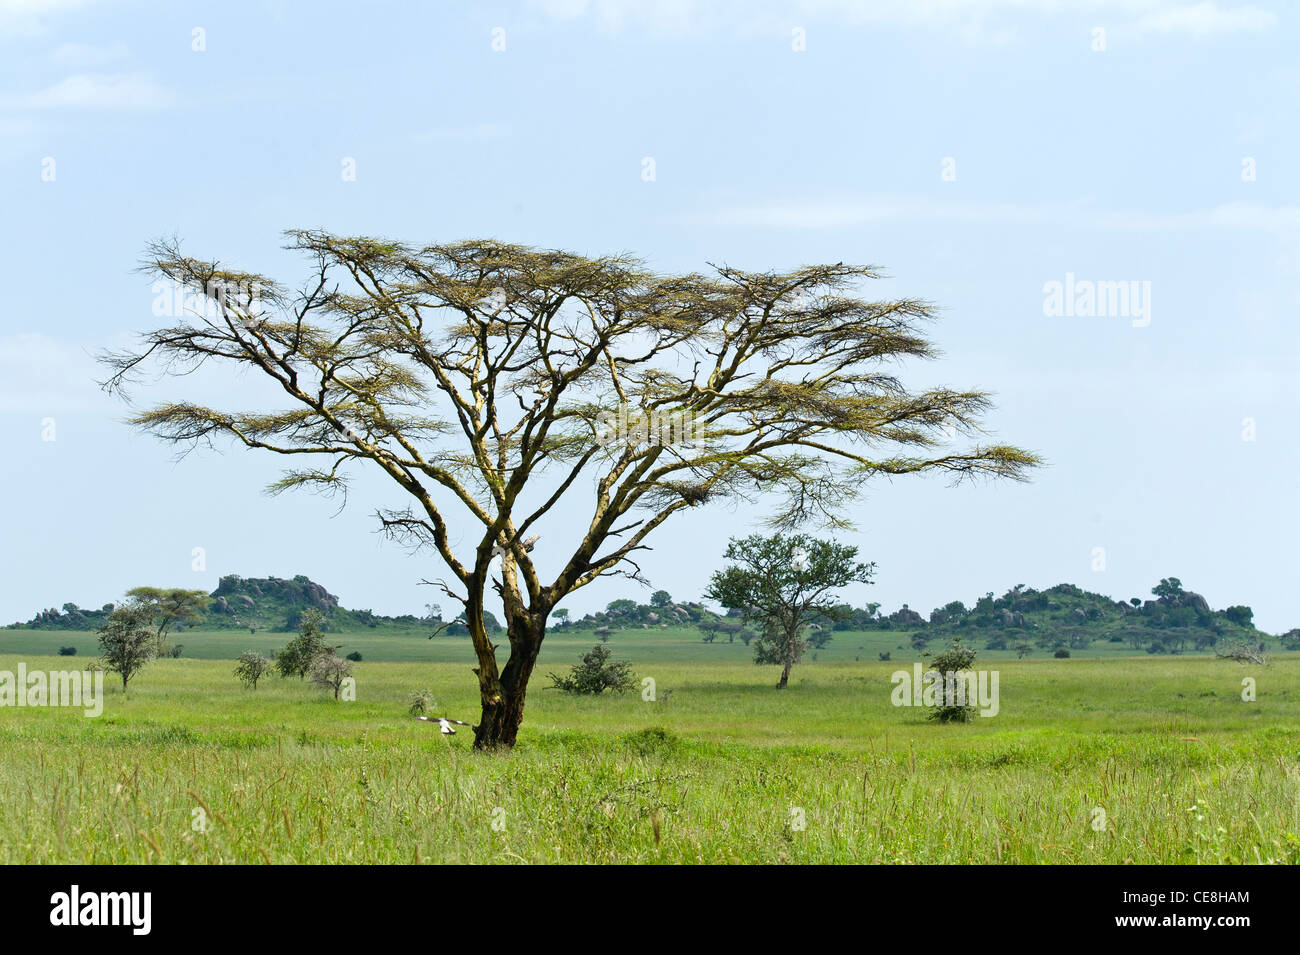 Serengeti landscape with Yellow barked Acacia trees (Acacia xanthophloea), Tanzania Stock Photo